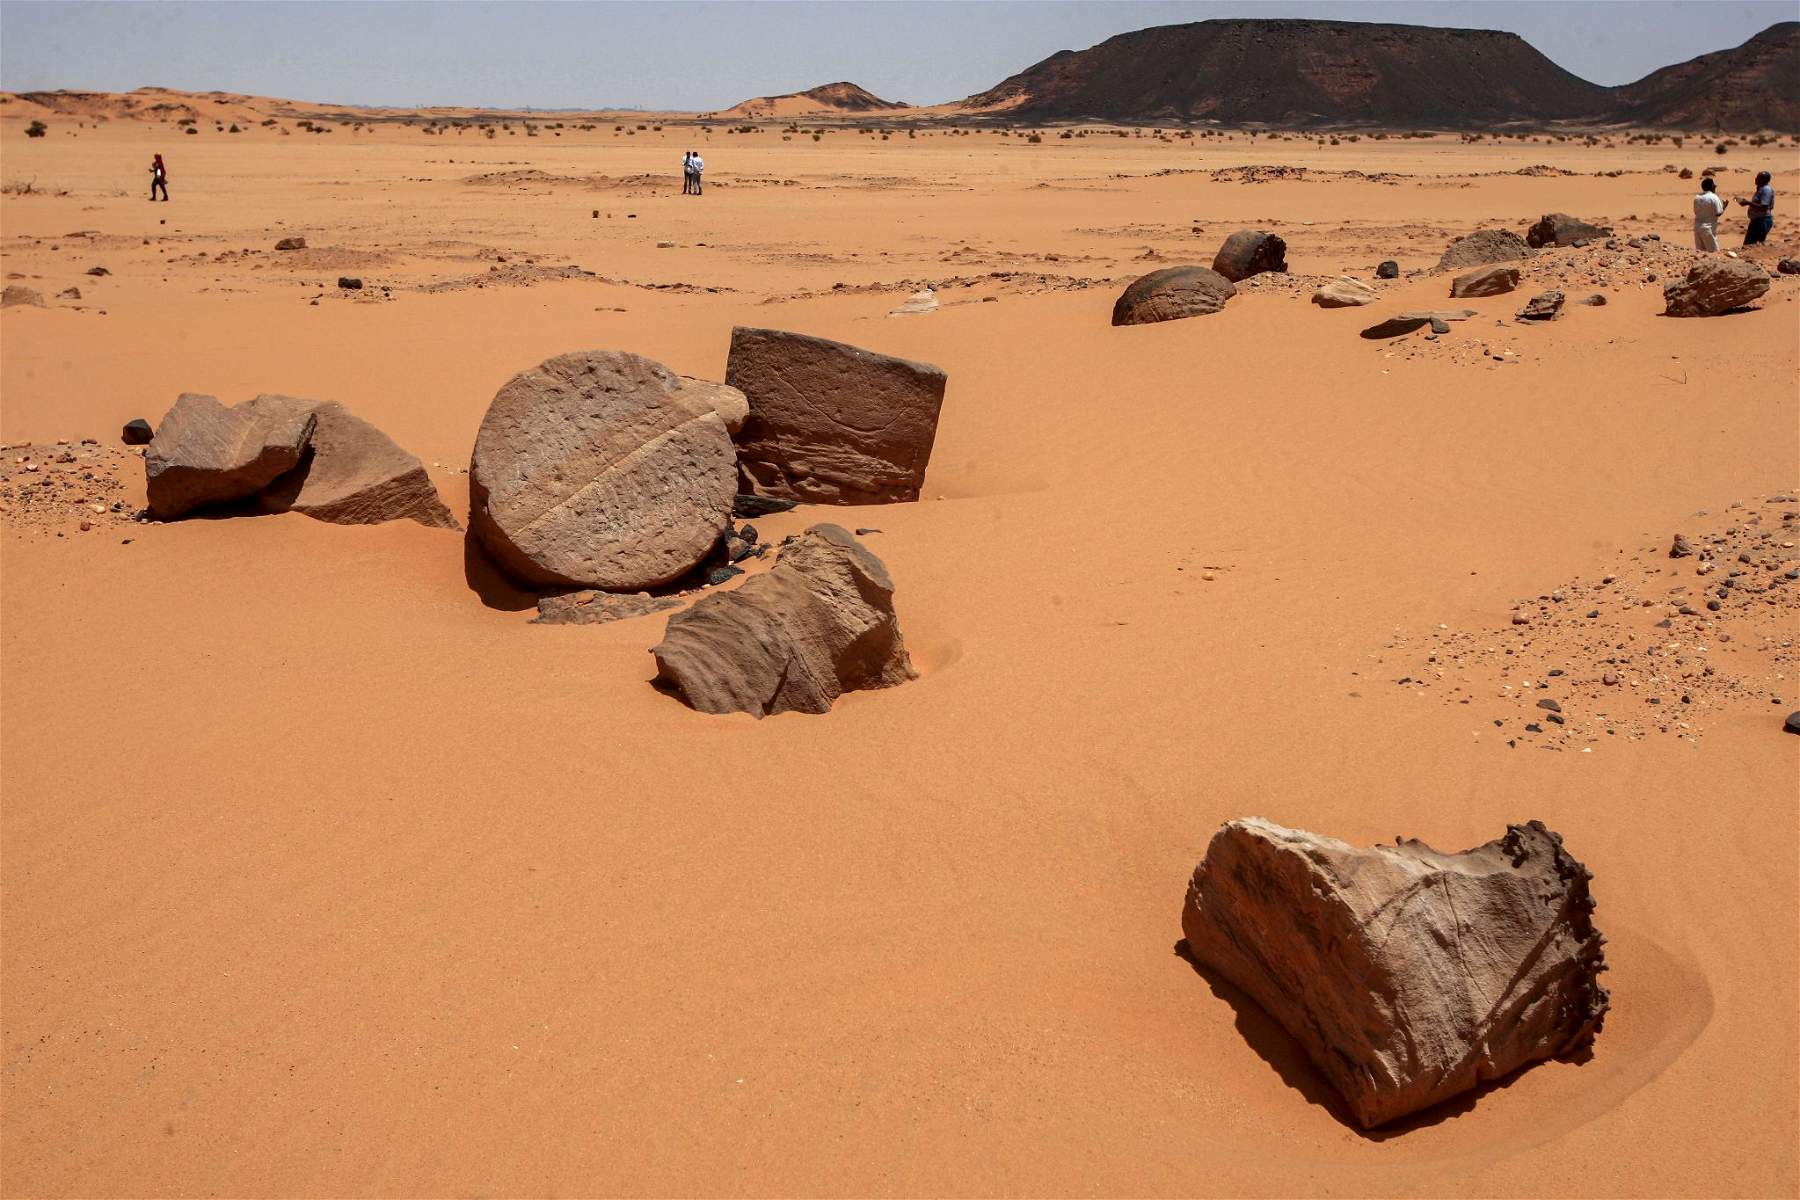 Soudan : des chercheurs d'or illégaux détruisent un site archéologique vieux de 2 000 ans